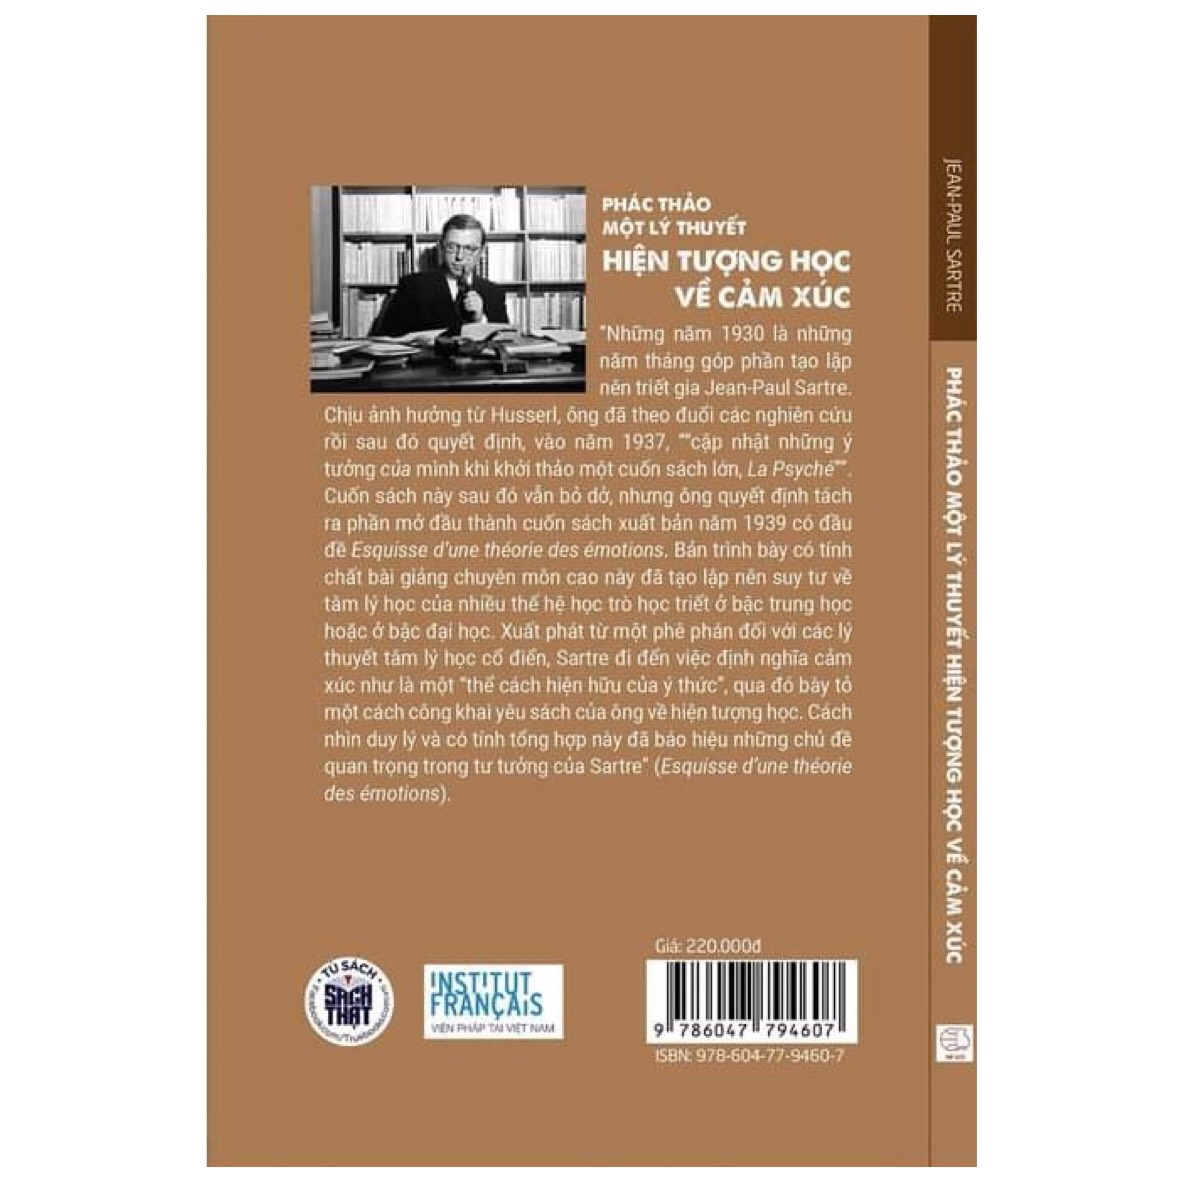 Phác Thảo Một Lý Thuyết Hiện Tượng Học Về Cảm Xúc - Jean-Paul Sartre - Phạm Anh Tuấn dịch - (bìa cứng)